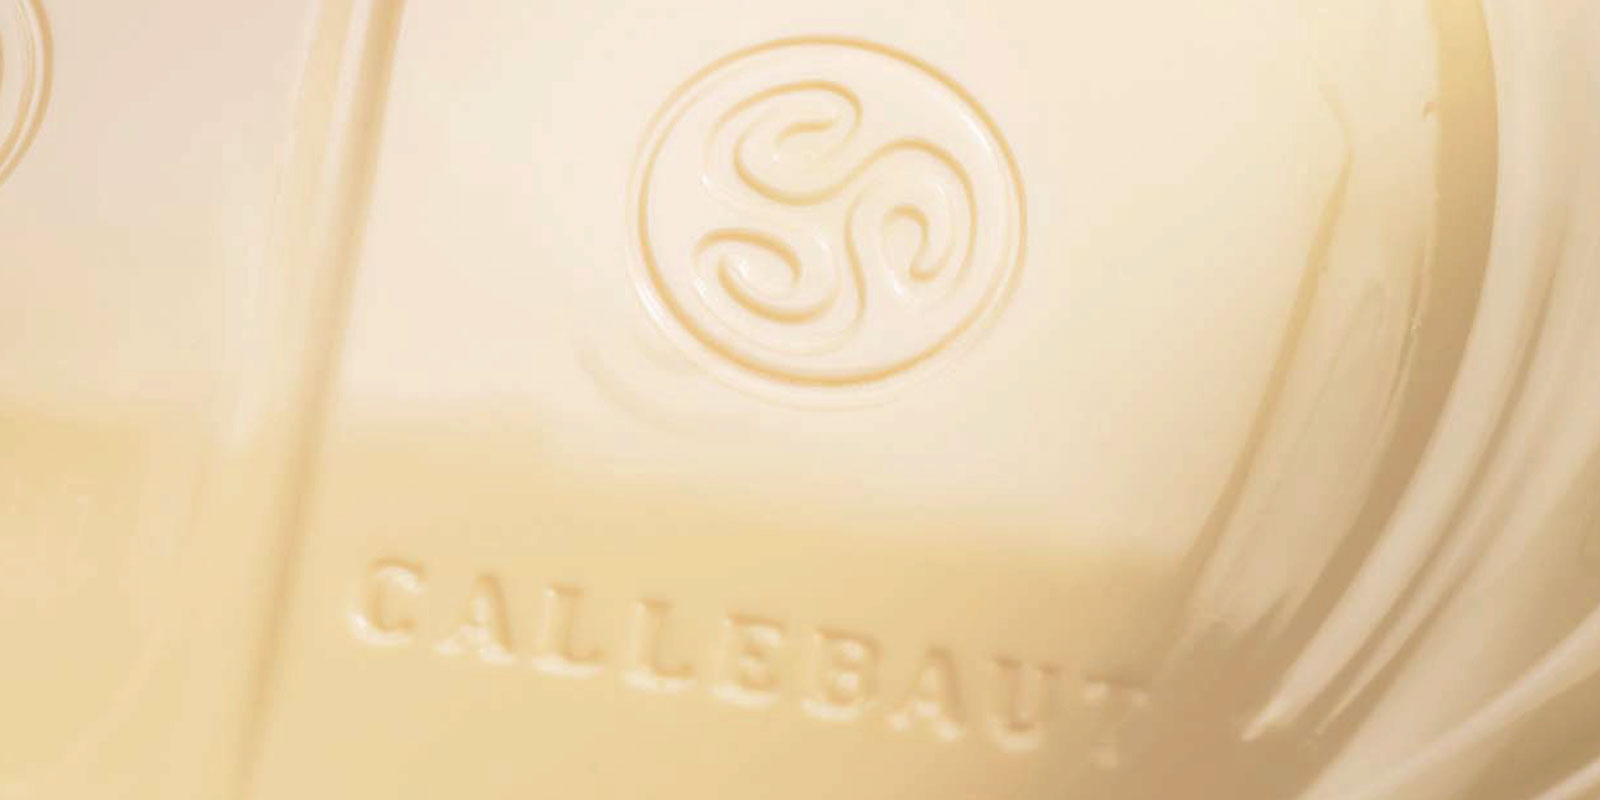 Coklat putih Callebaut Cokelat putih merupakan hasil pencampuran mentega kakao, susu bubuk, dan gula. Rasio pencampuran bahan-bahan ini - misalnya vanilin, vanila, atau lesitin - menentukan rasa produk akhir.